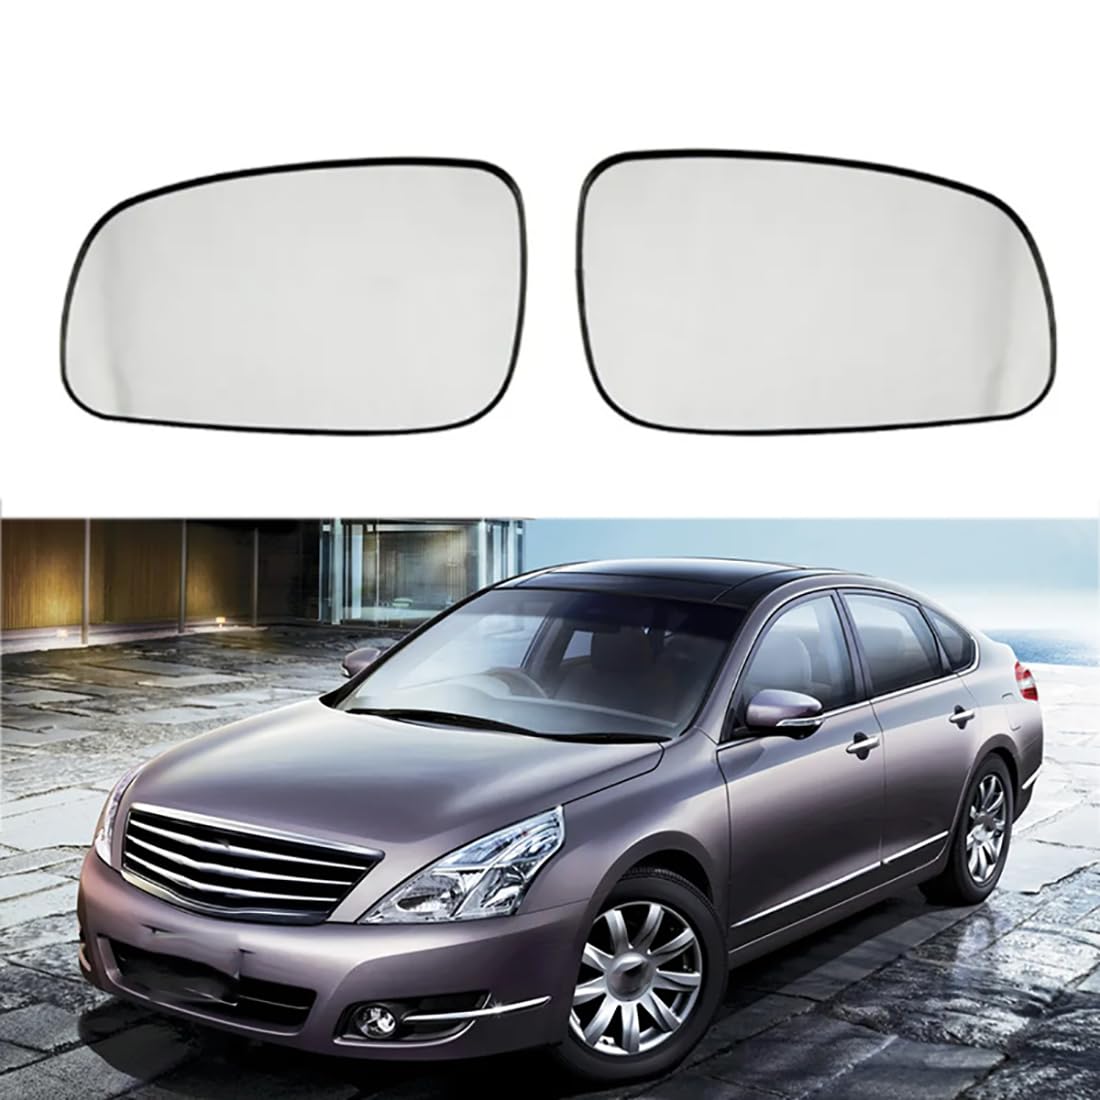 Austauschbarer Auto-Außenspiegel aus Beheizbarem Glas für Nissan Teana Maxima Cefiro Sentra J32 2008-2013,beheizbarer Rückspiegel für Fahrer und Beifahrer Links/rechts,C-right and left von YujieNB